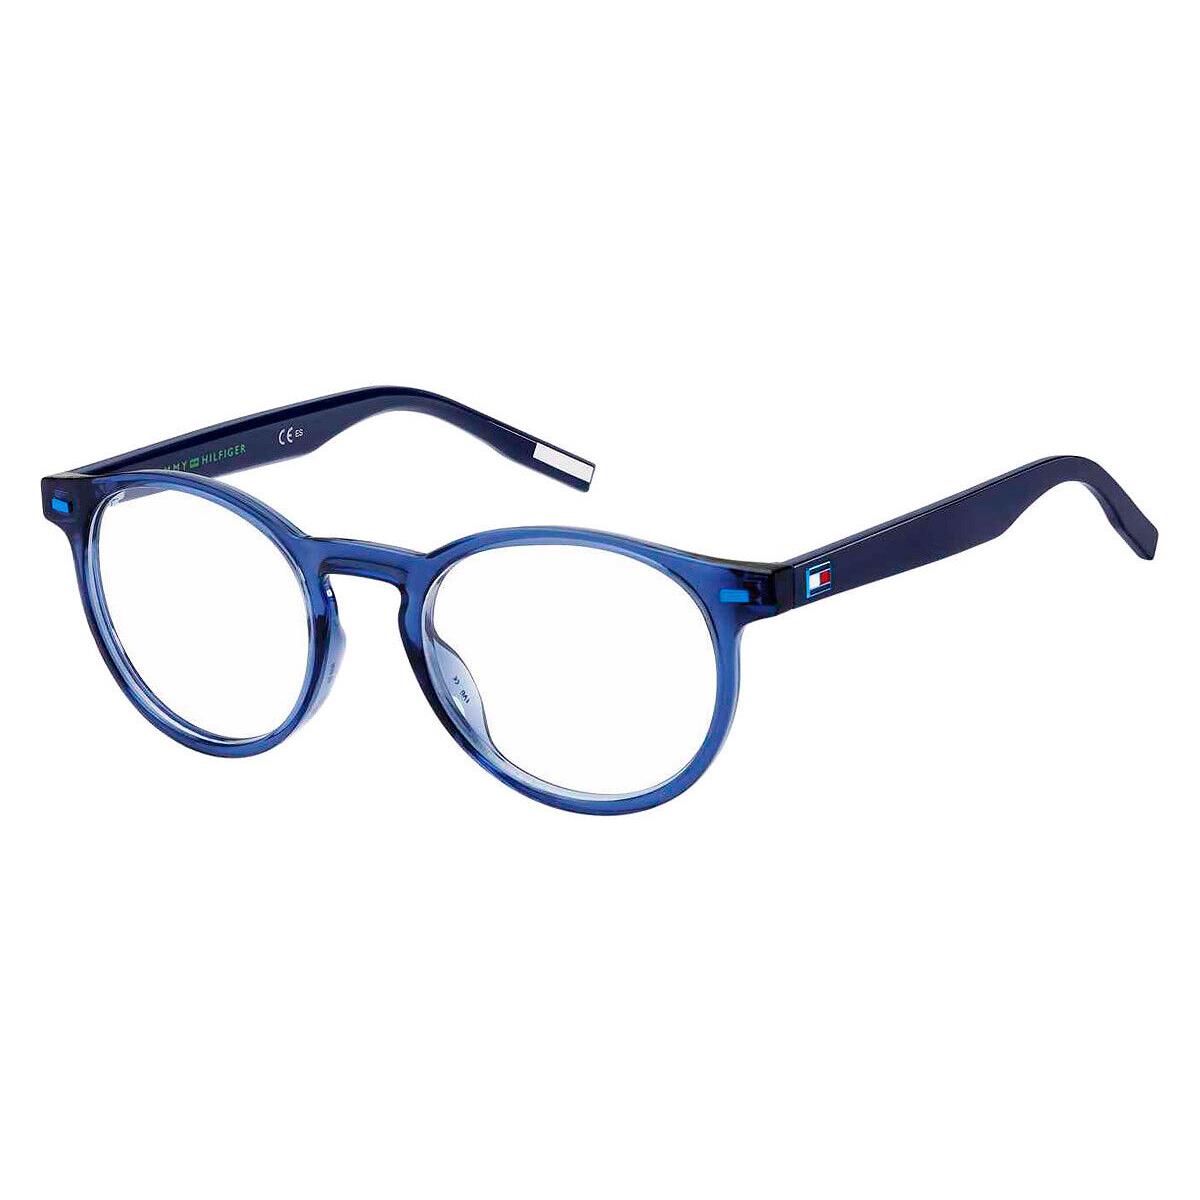 Tommy Hilfiger Thf Eyeglasses Kids Blue 46mm - Frame: Blue, Lens: Demo